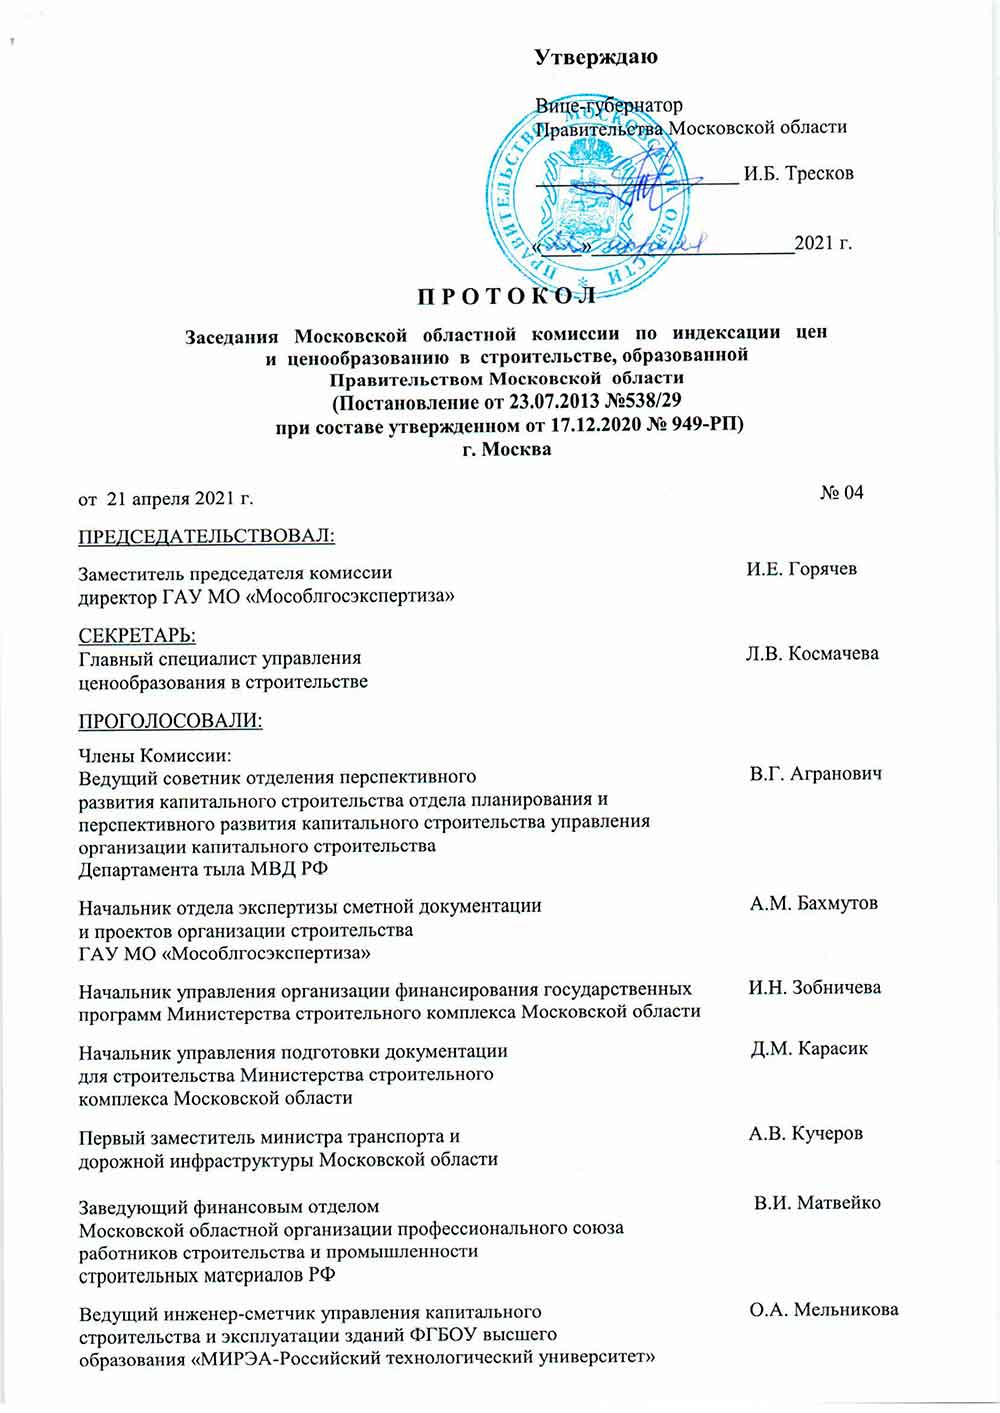 Протокол Мособлгосэкспертизы №04 от 21.04.2021 года